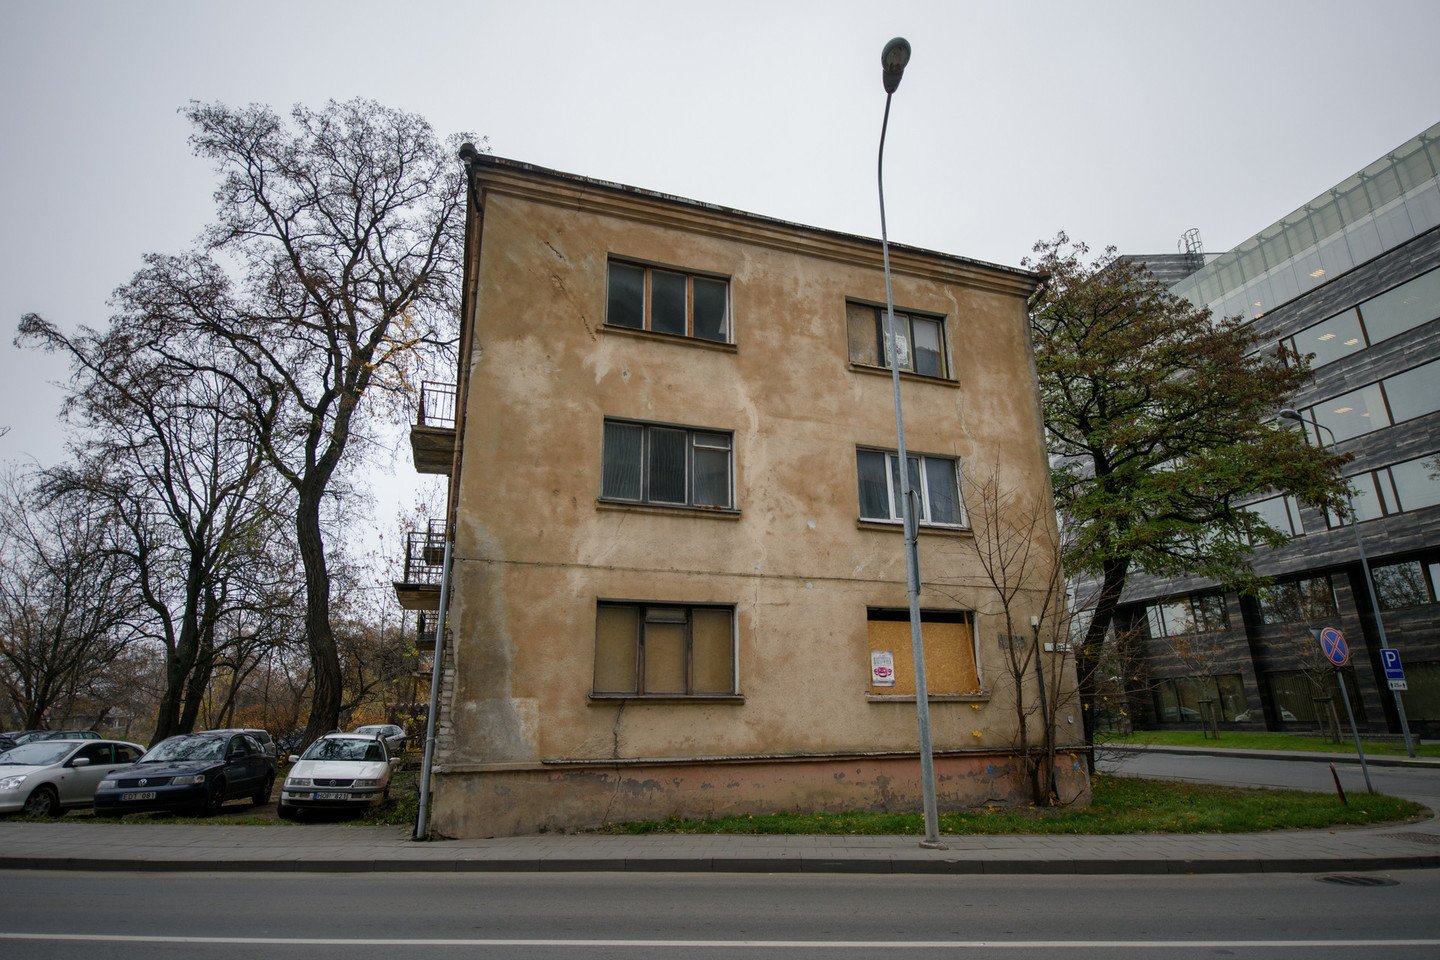 Pastatas vaiduoklis jau seniai stūkso Vilniaus savivaldybės pašonėje.<br>D.Umbraso nuotr.